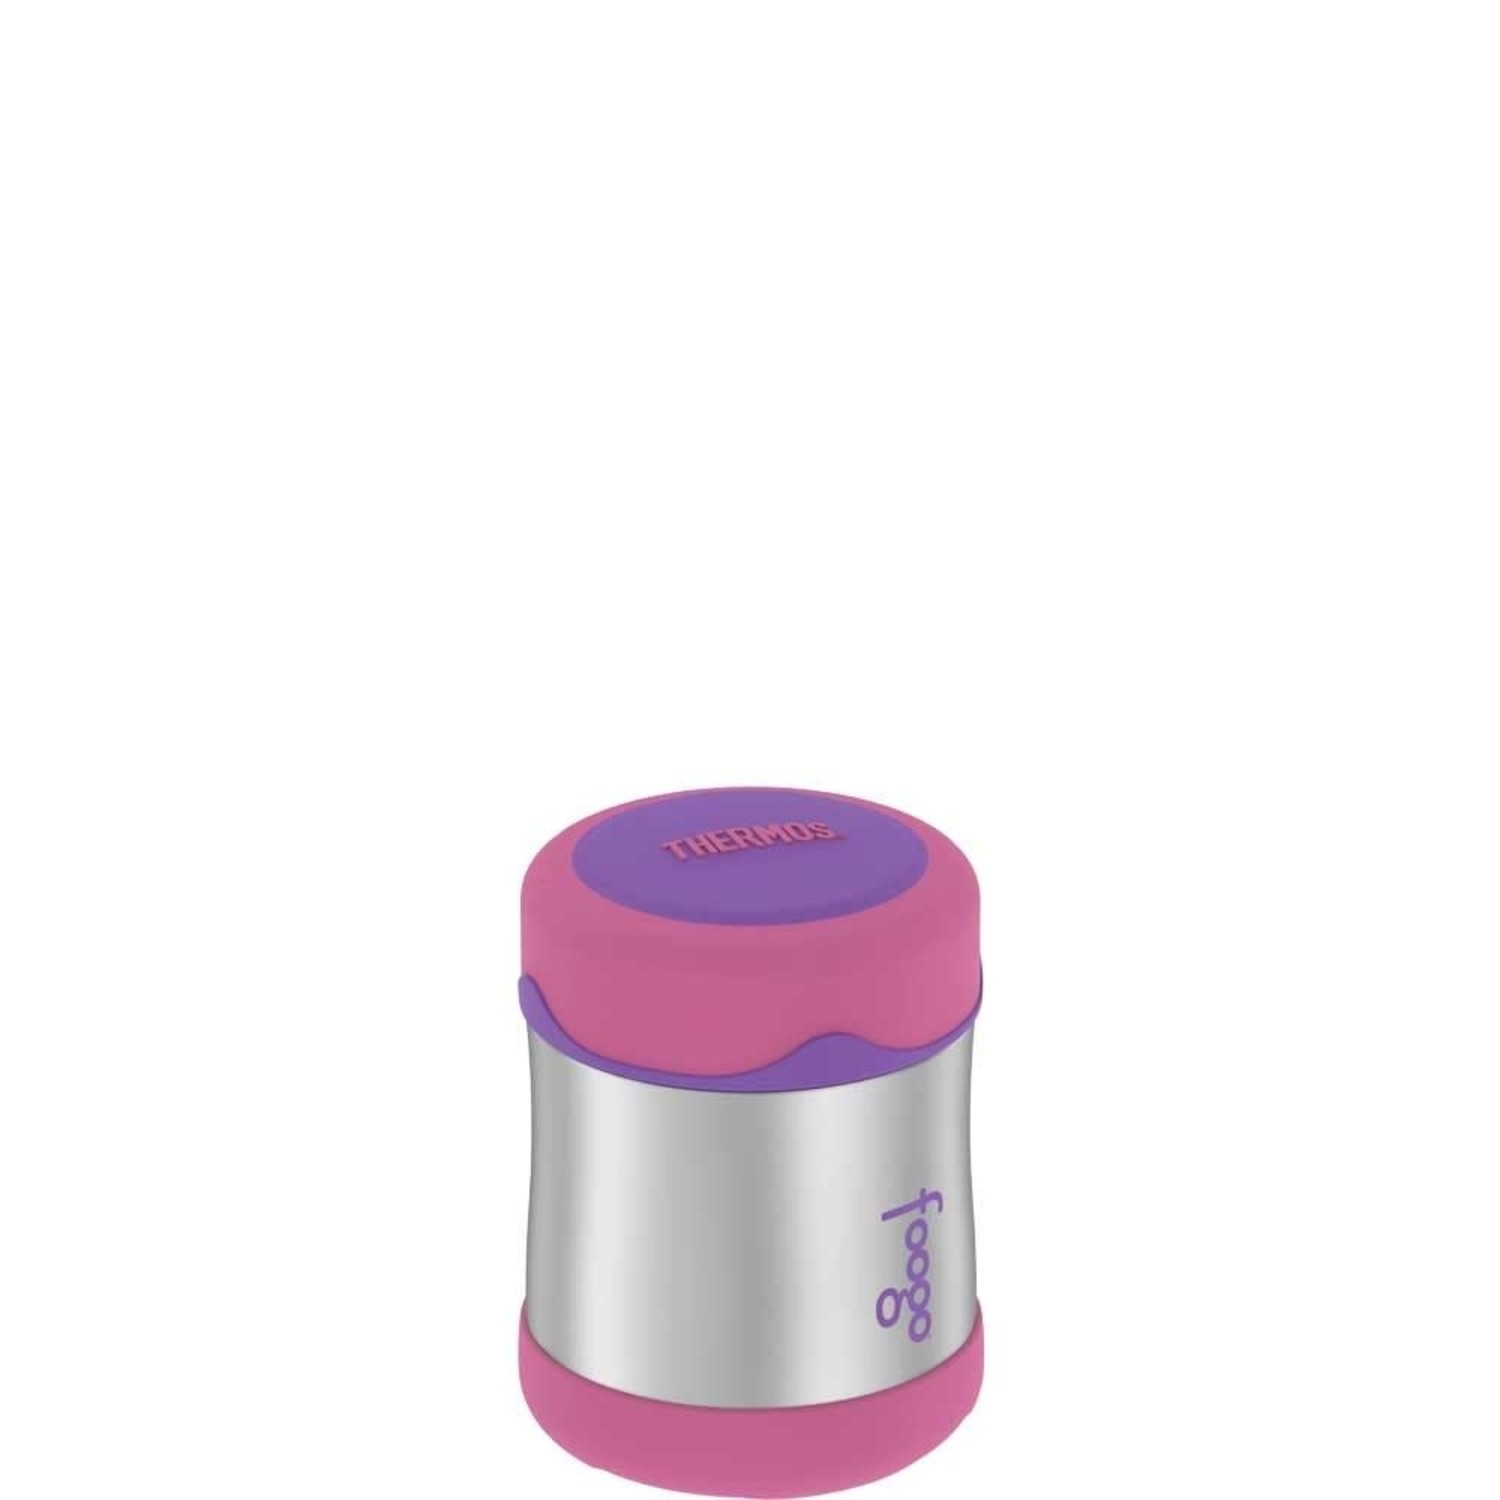 https://cdn.shoplightspeed.com/shops/633447/files/17966315/1500x4000x3/10oz-pink-purple-food-jar.jpg